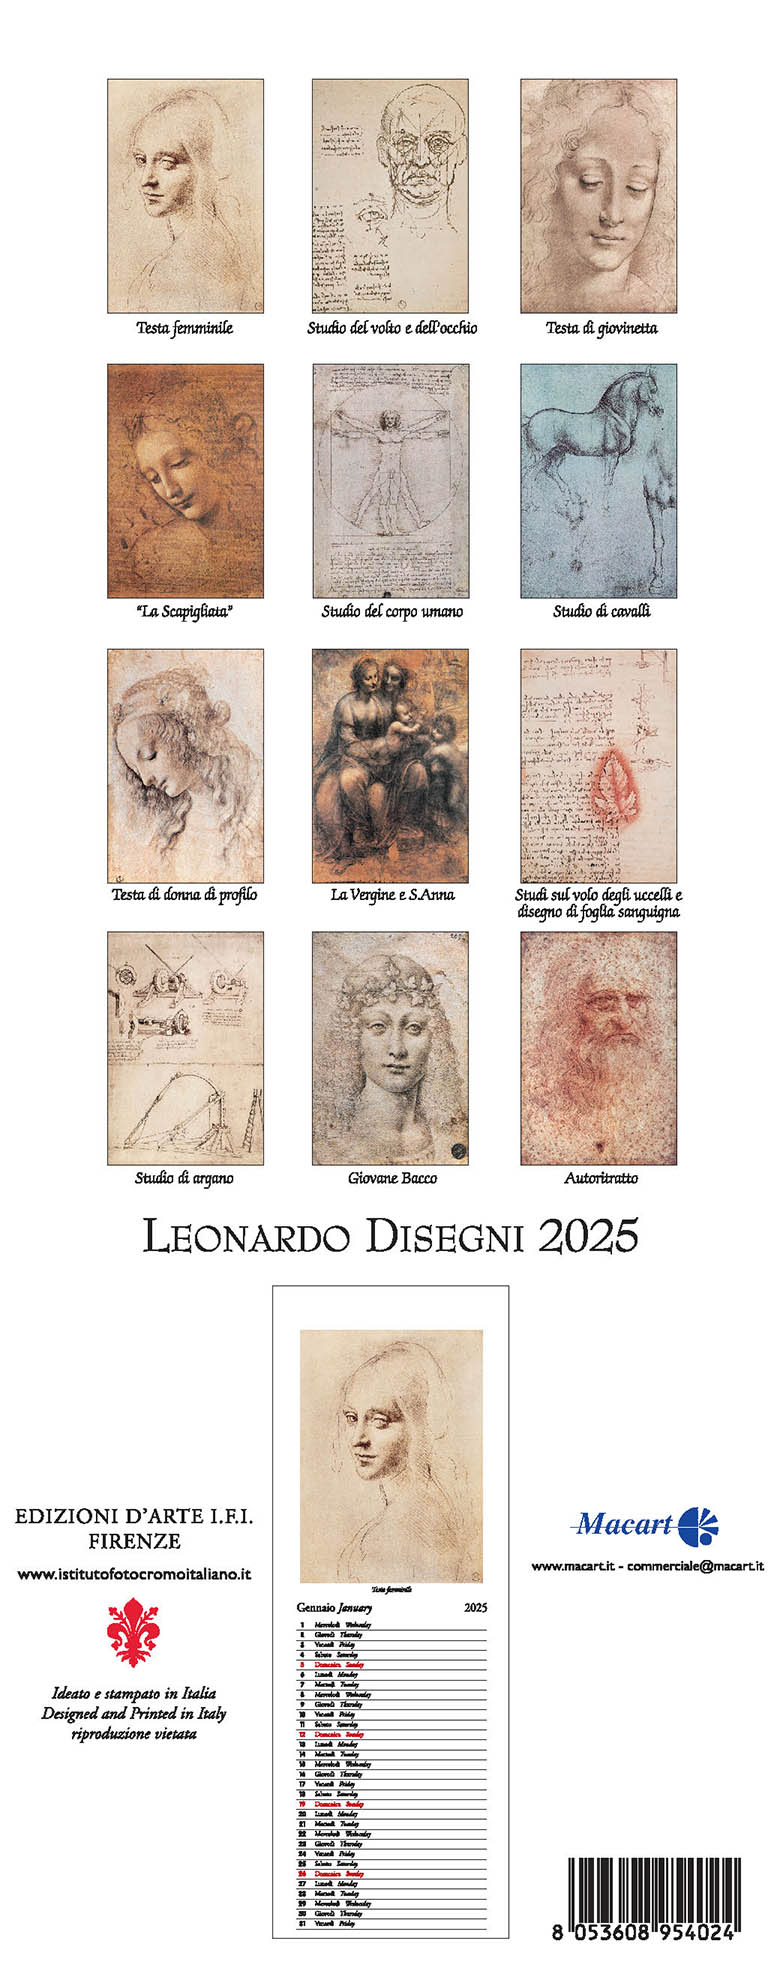 Disegni di Leonardo 2025